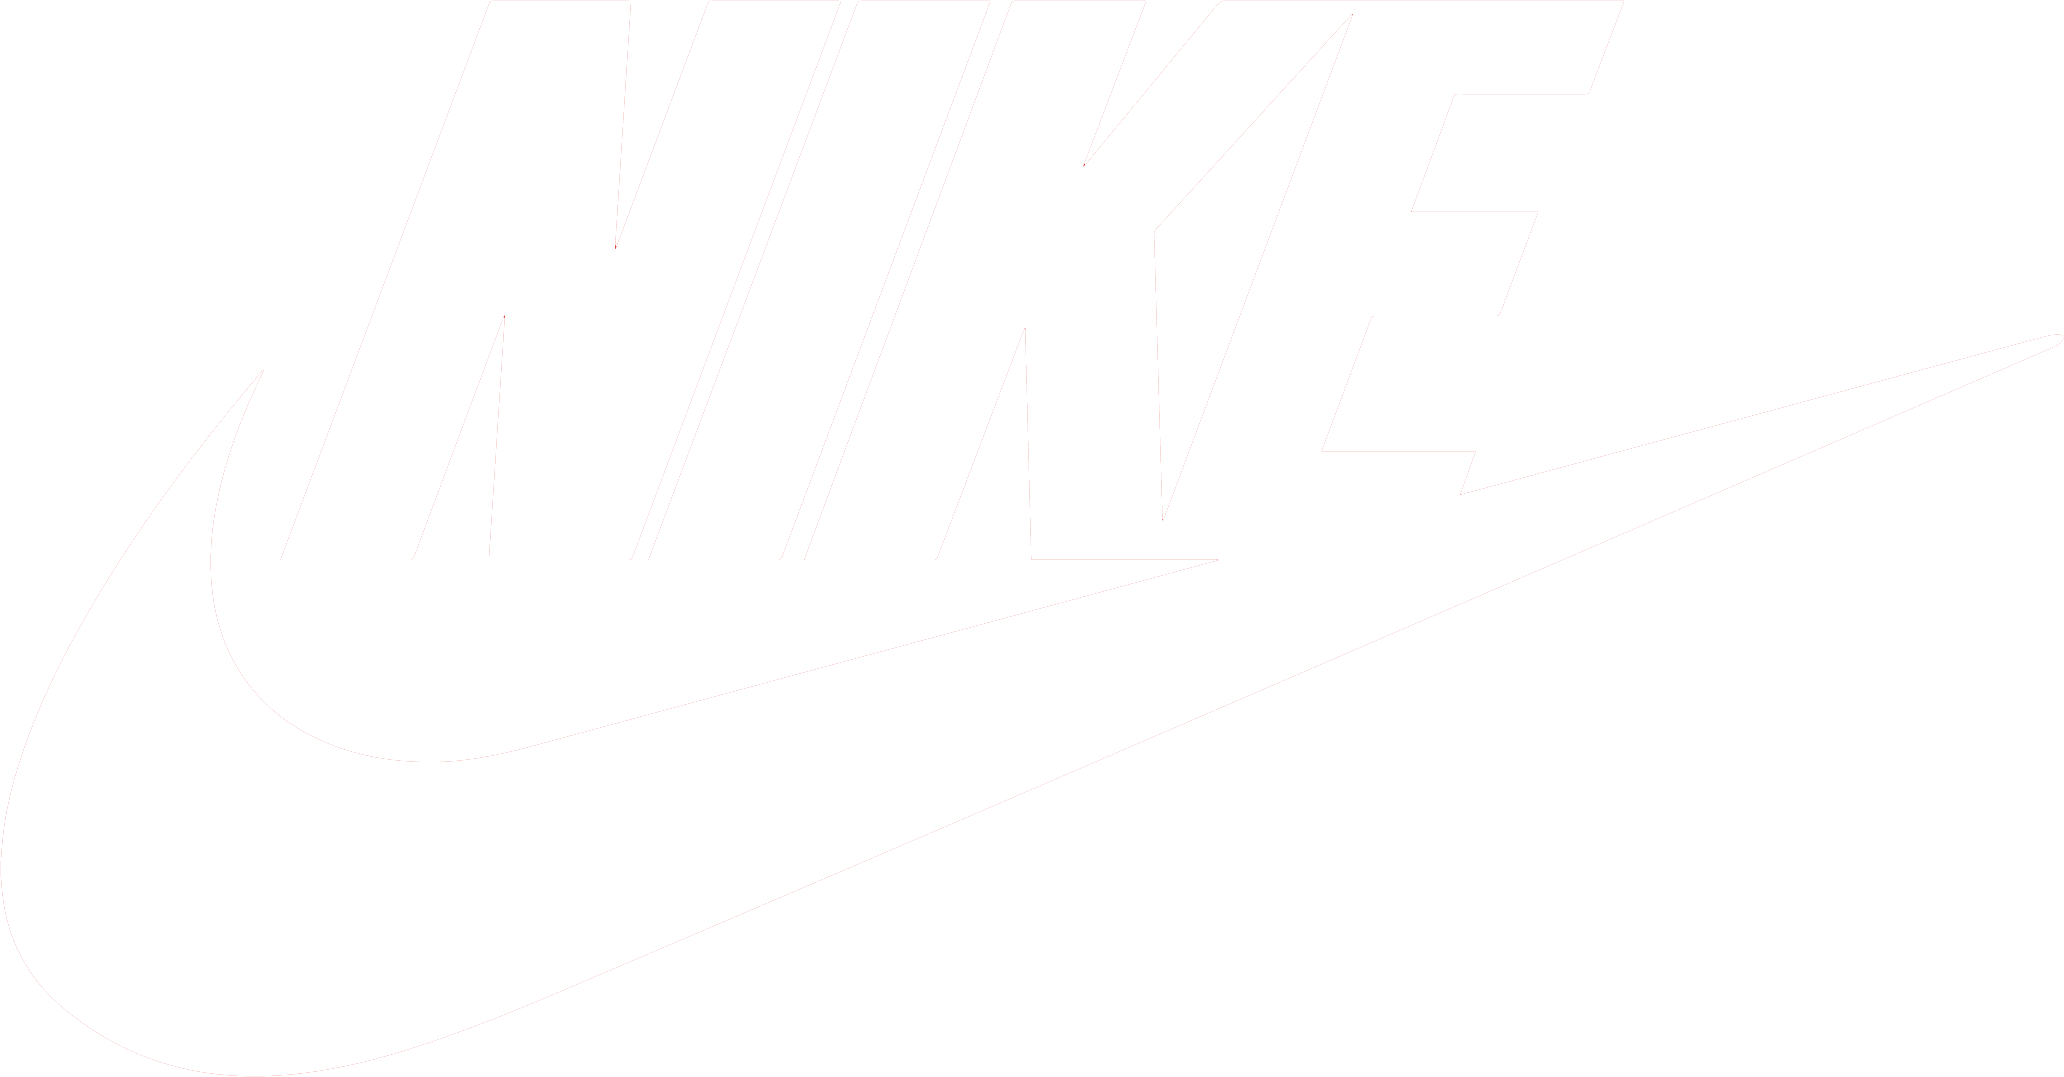 Niike Logo - Nike logo PNG images free download